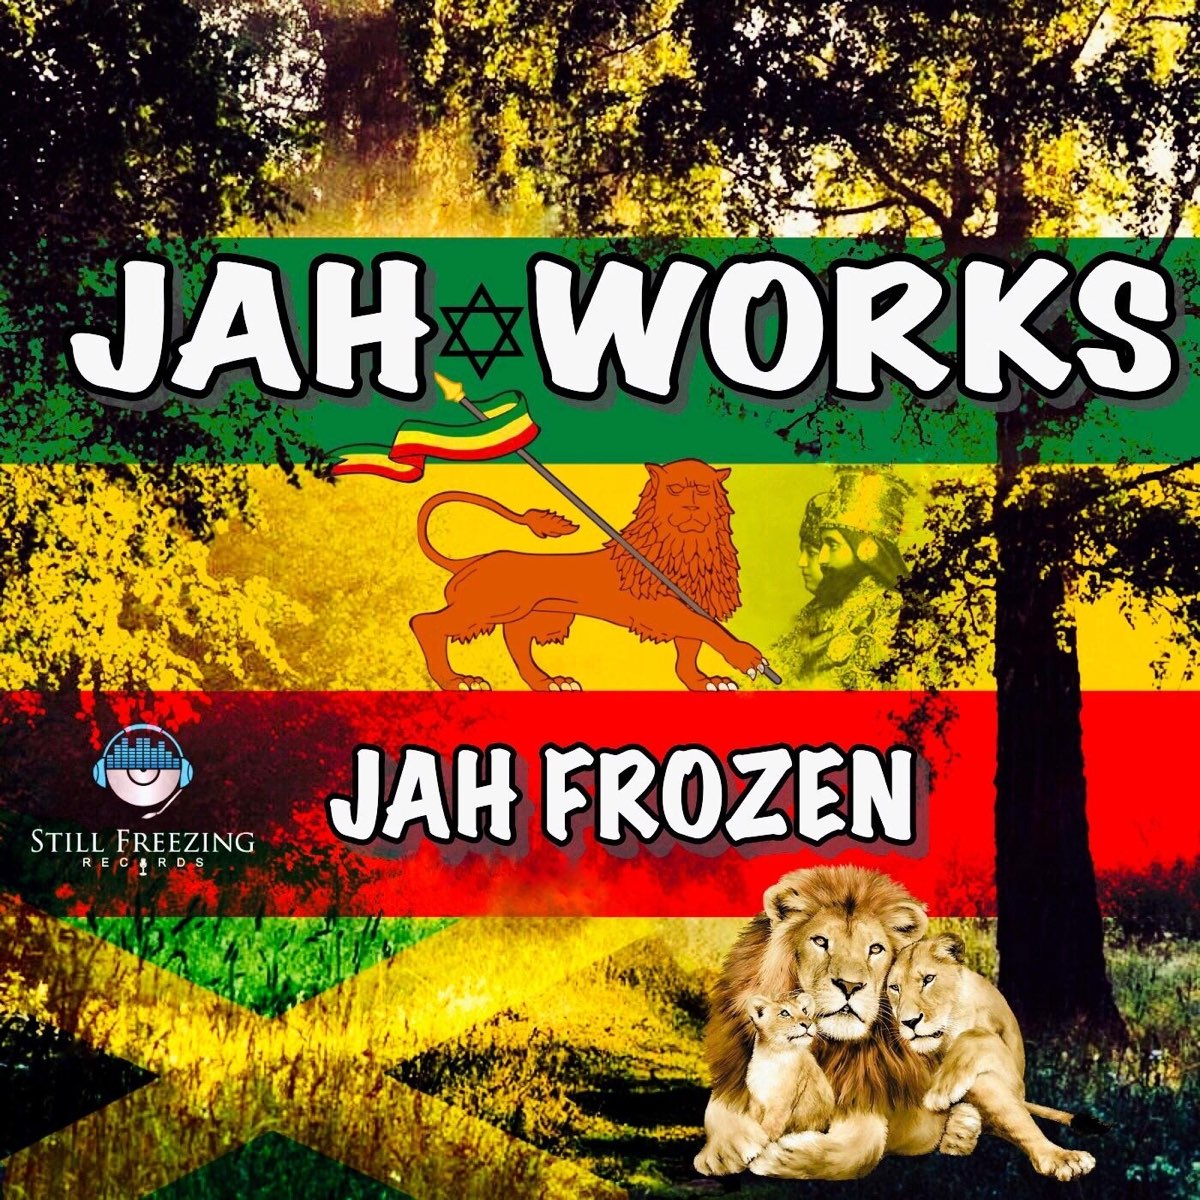 Работа джа. Jah works International.